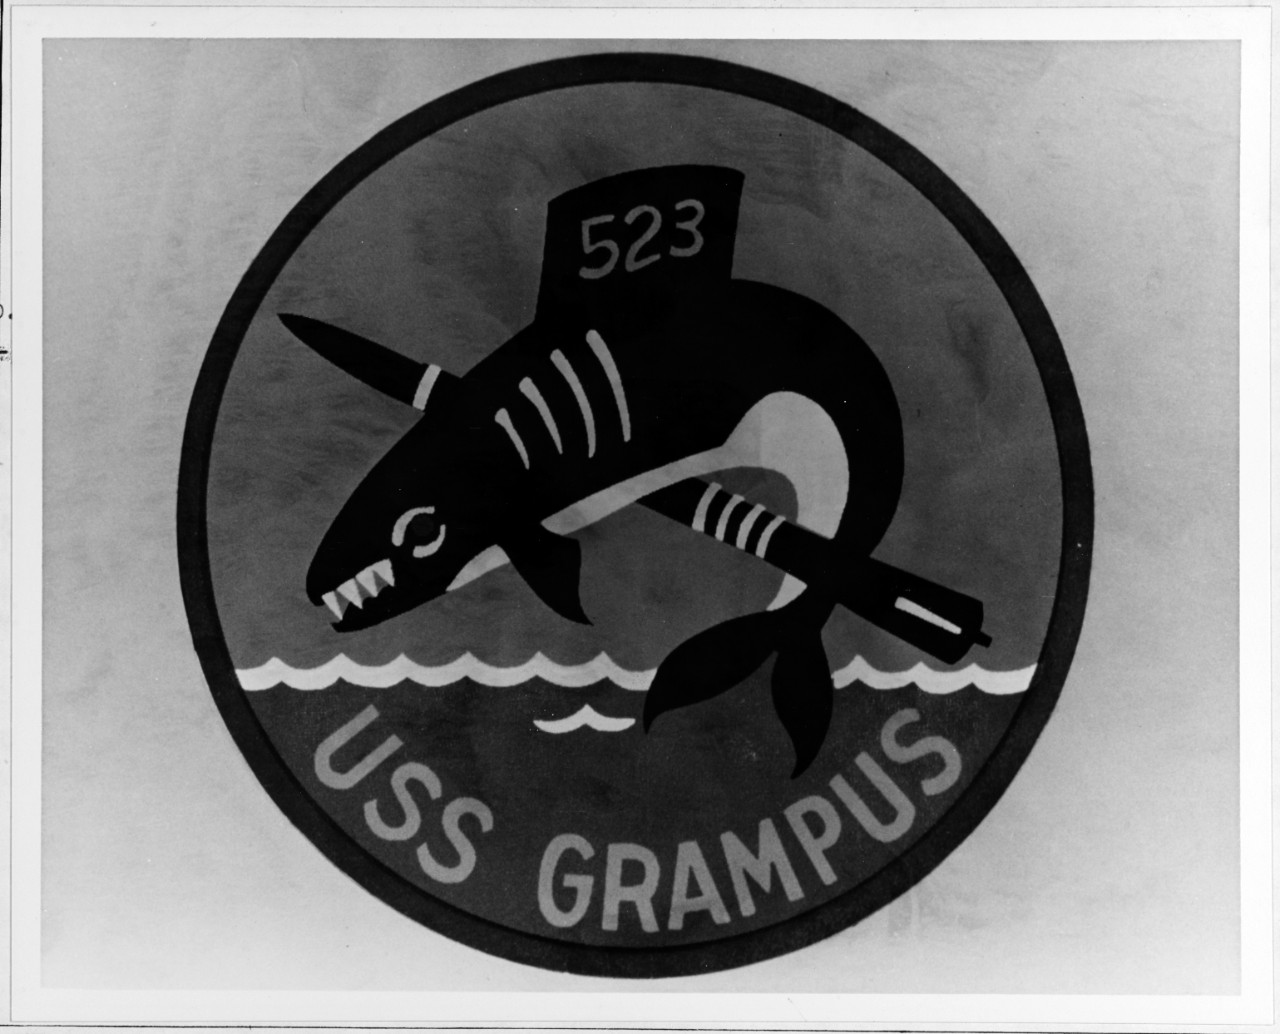 Insignia:  USS GRAMPUS (SS-523)